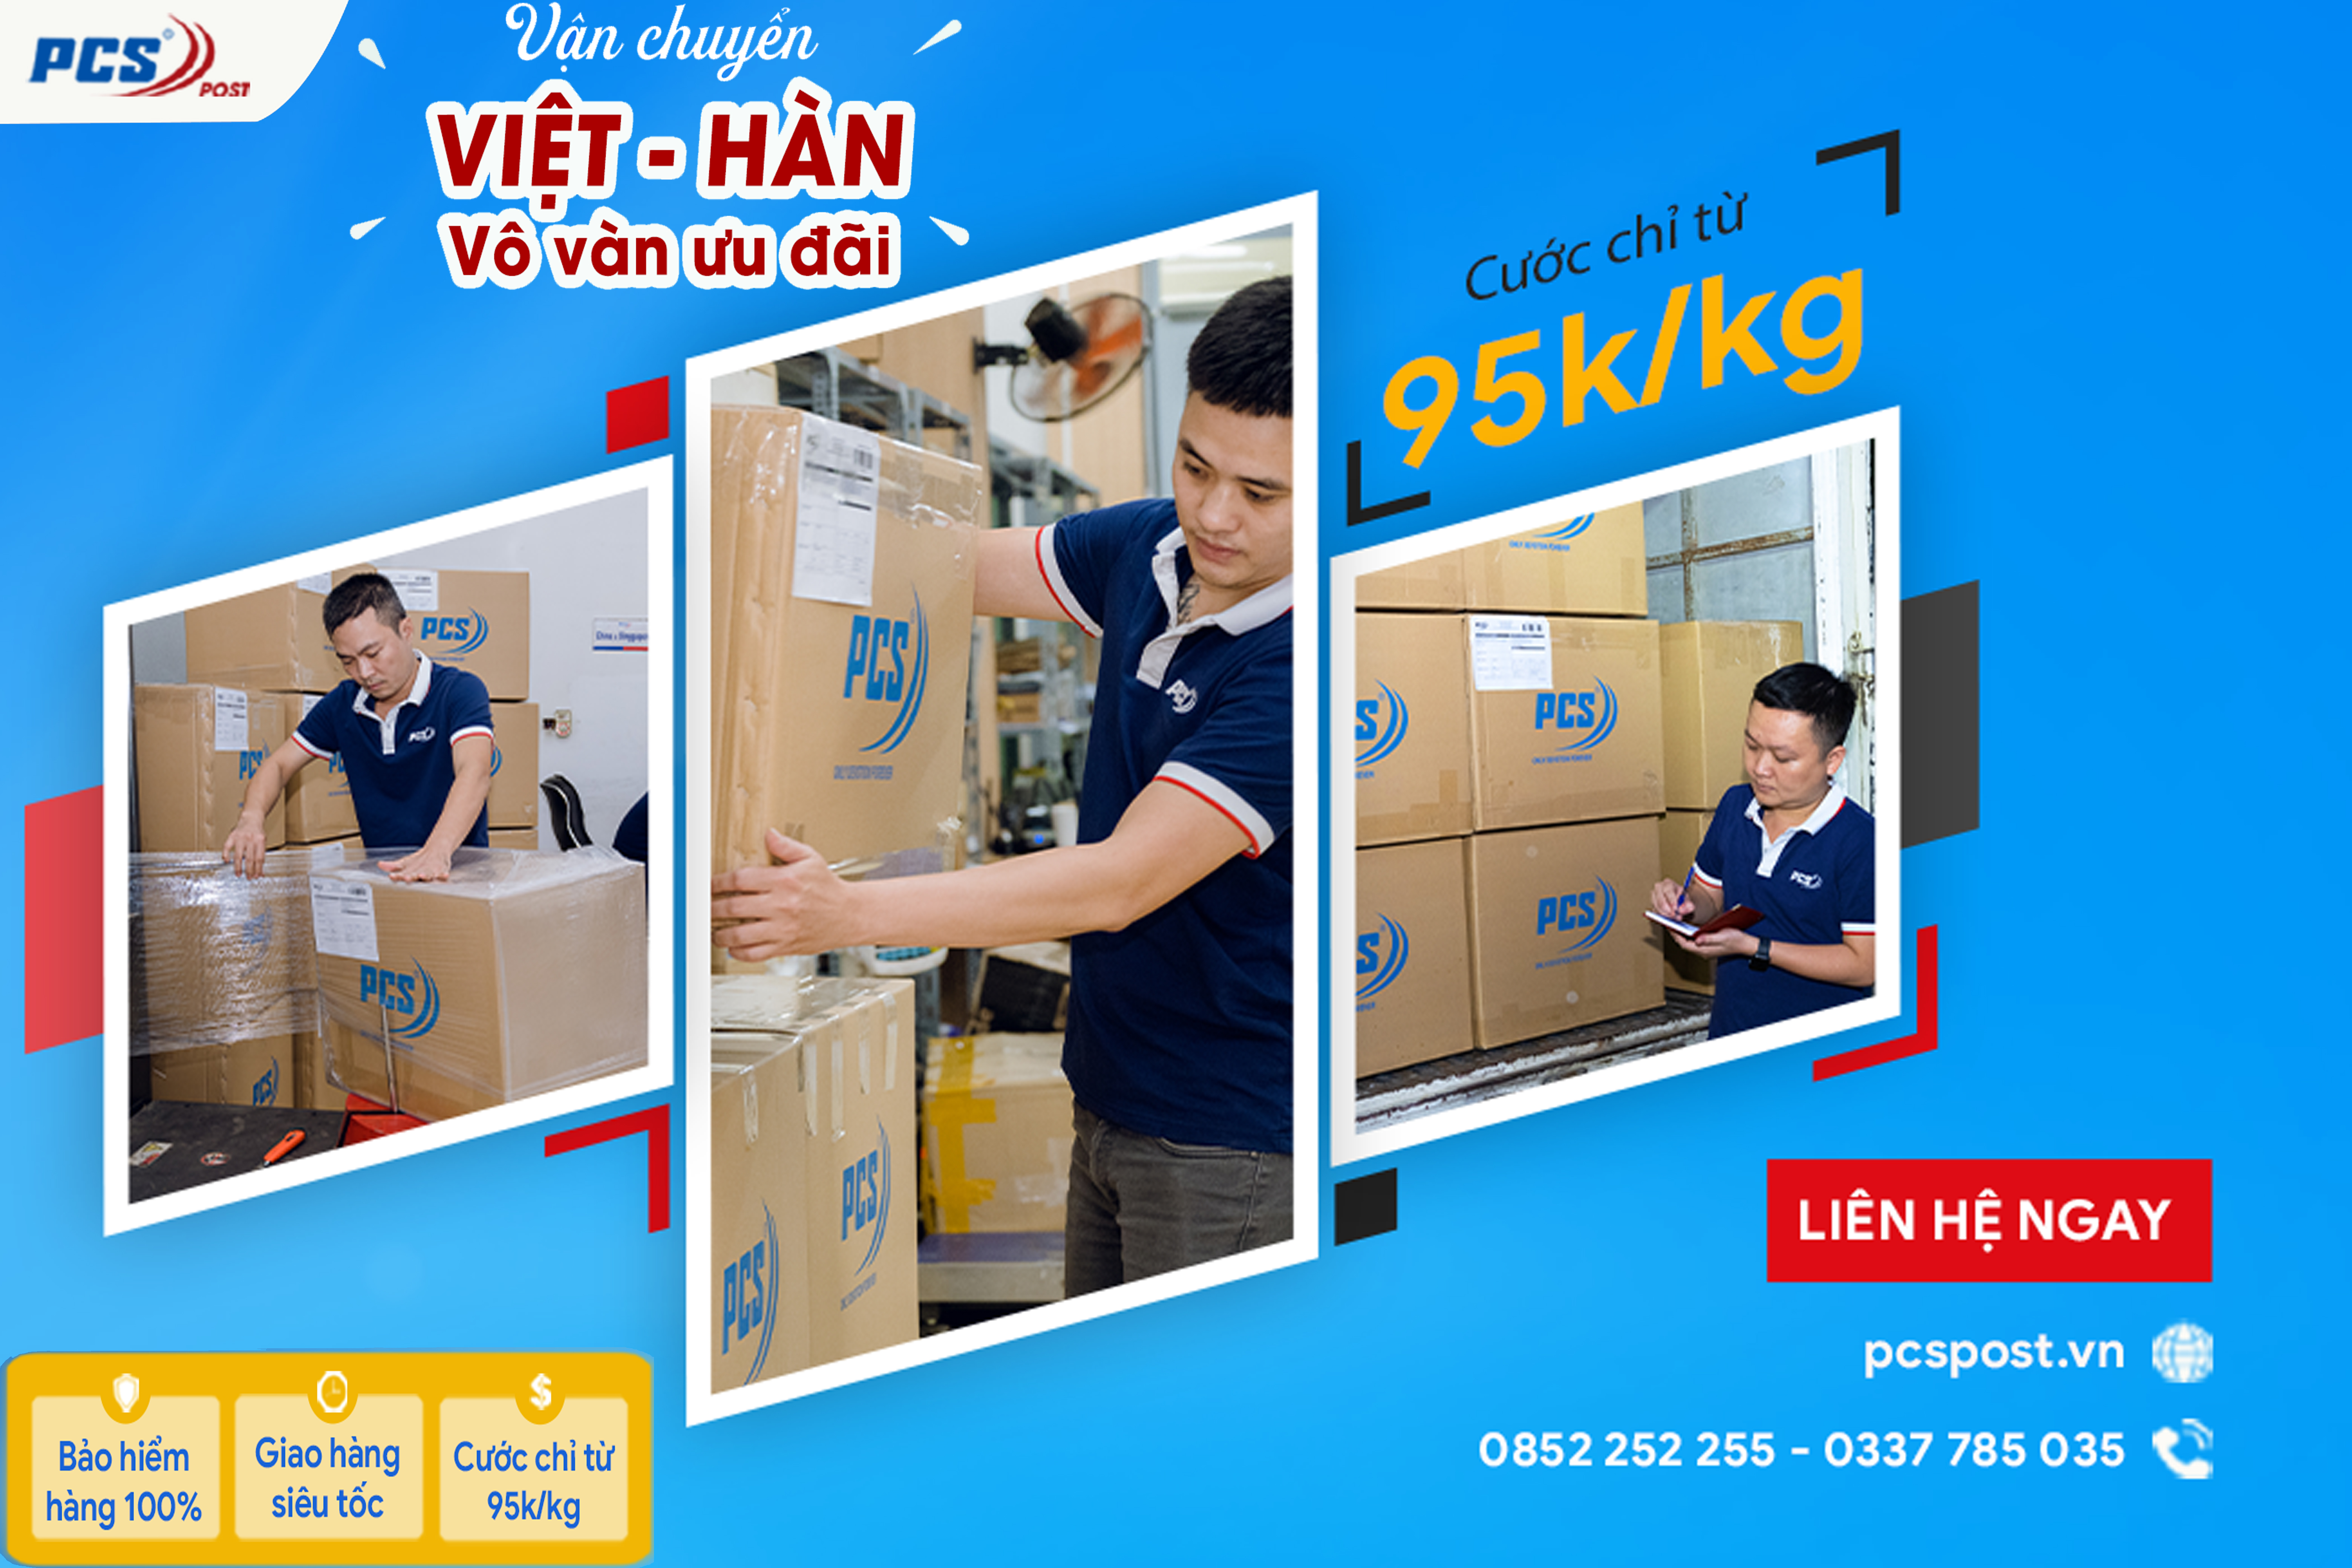 Tận hưởng dịch vụ vận chuyển Việt Hàn tại PCS Post cước chỉ từ 95k